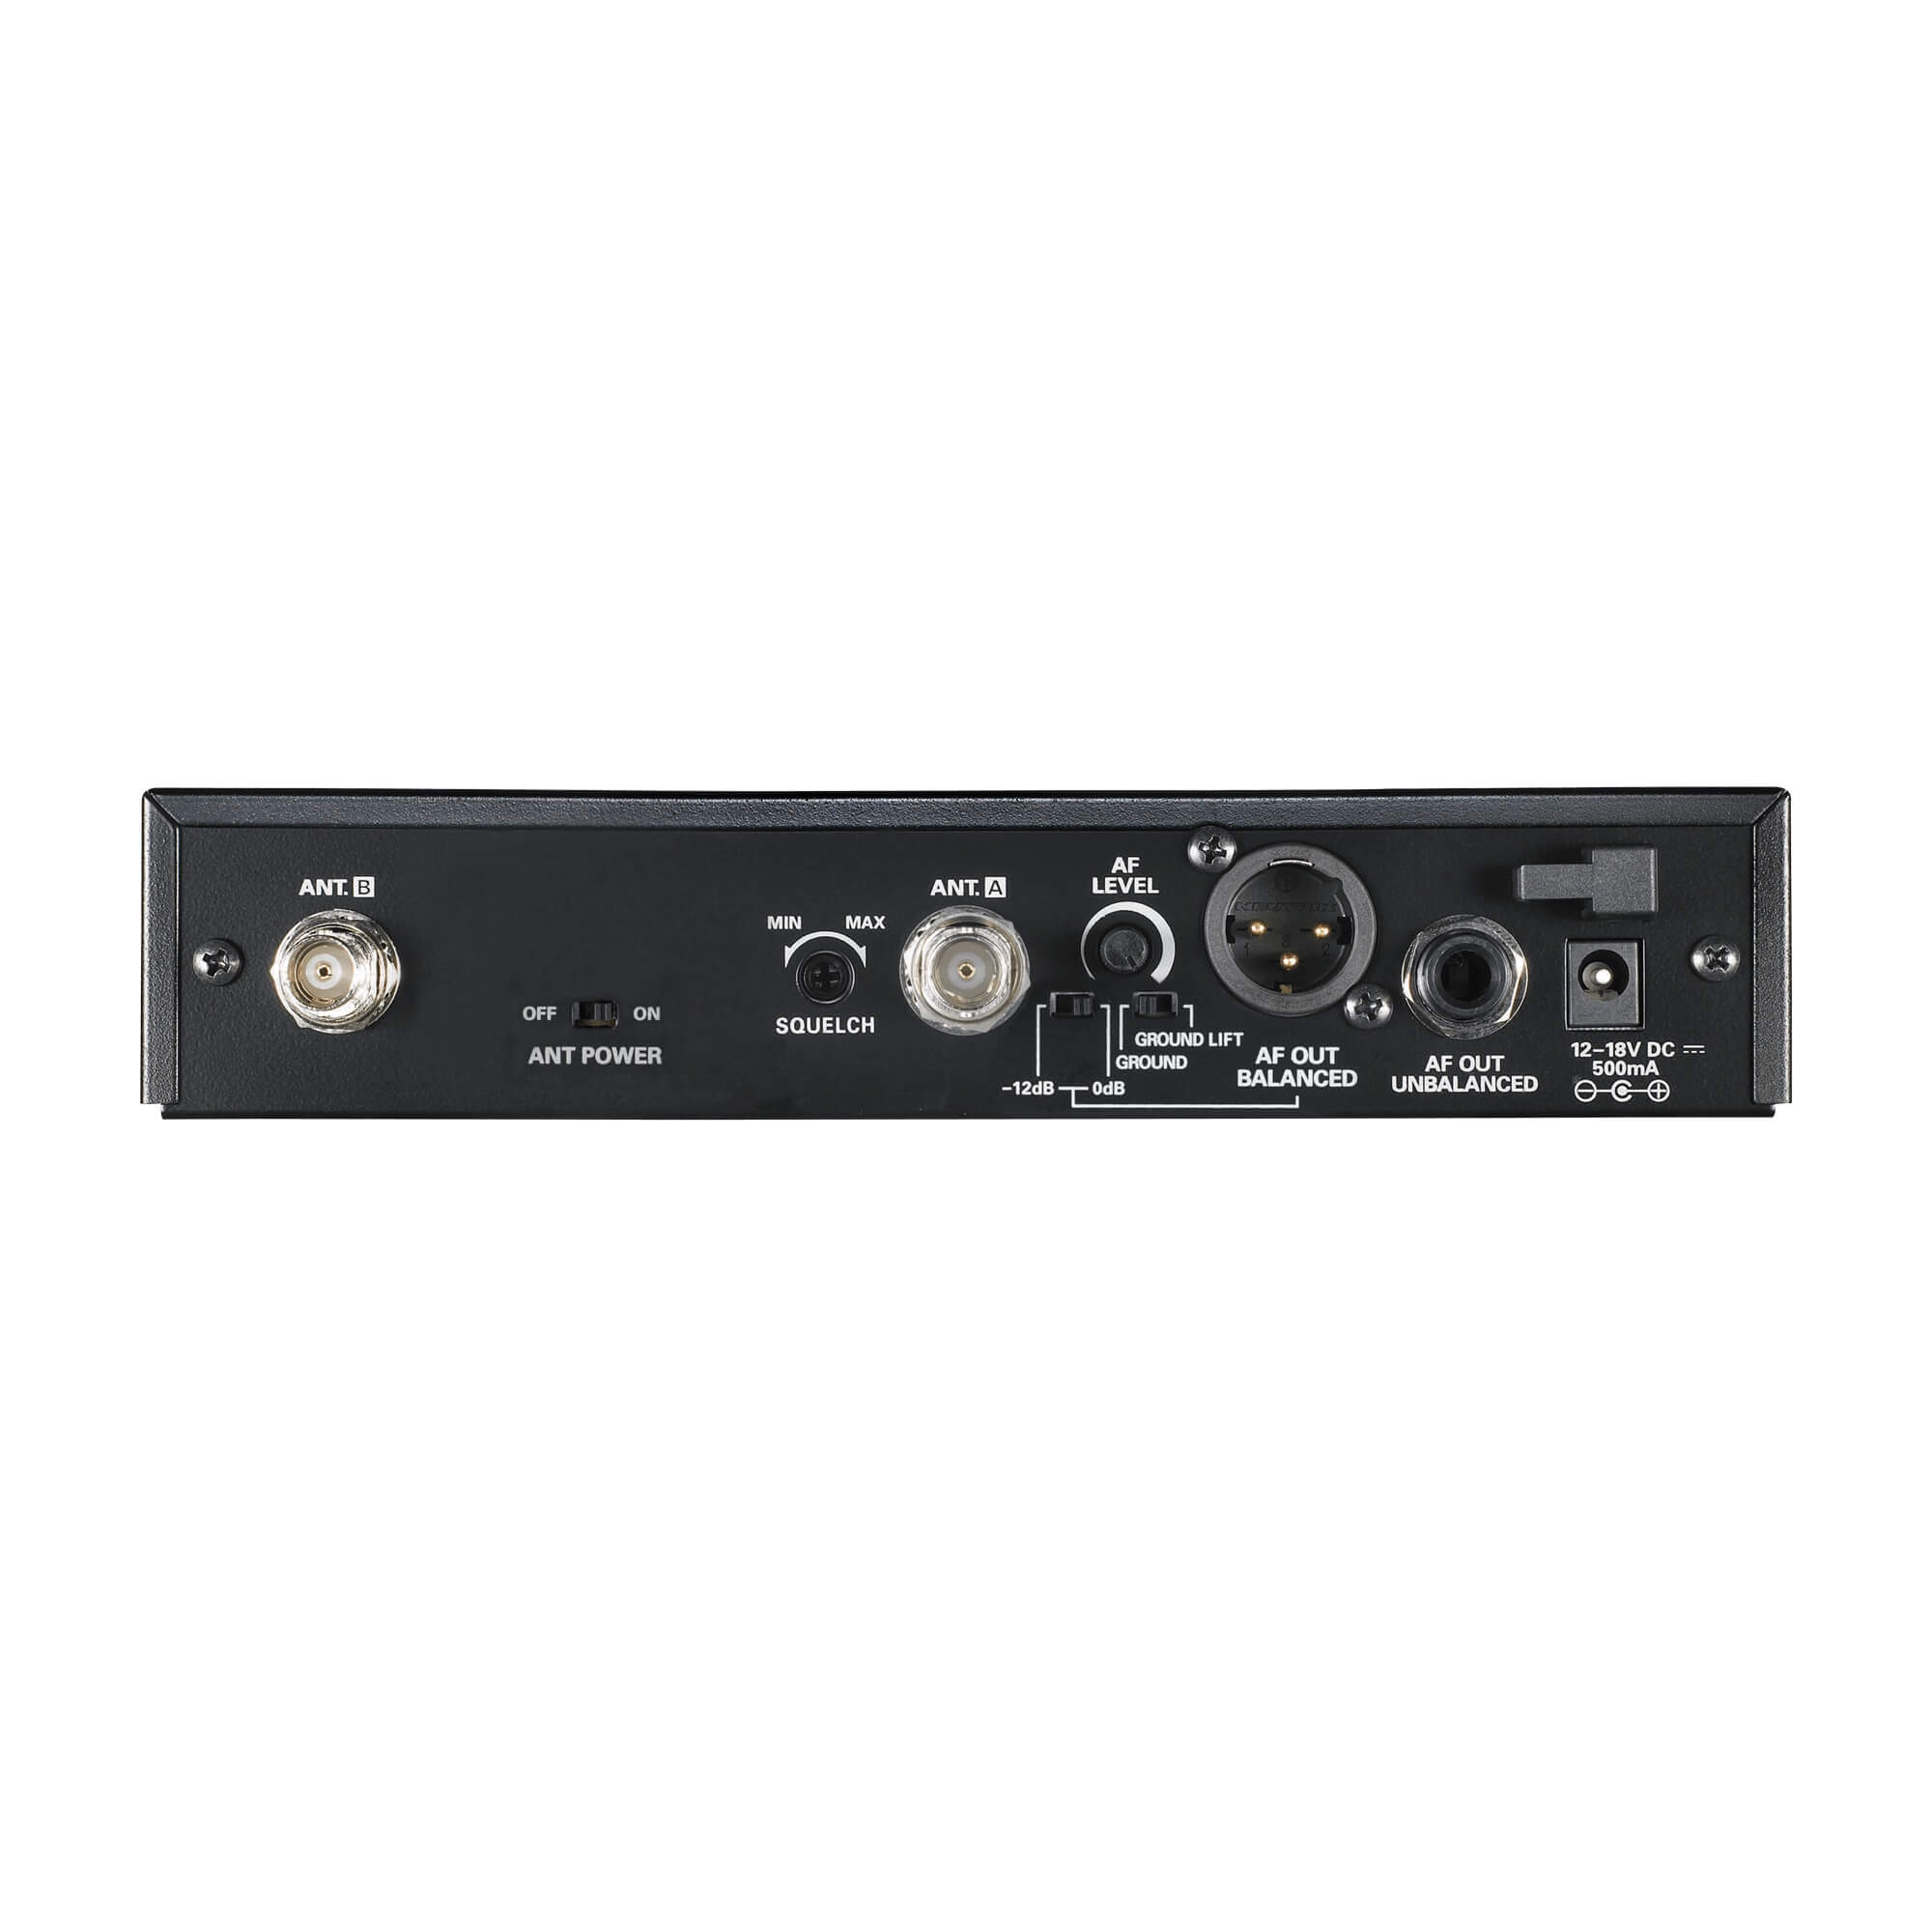 Audio-Technica ATW-R2100 receiver, rear